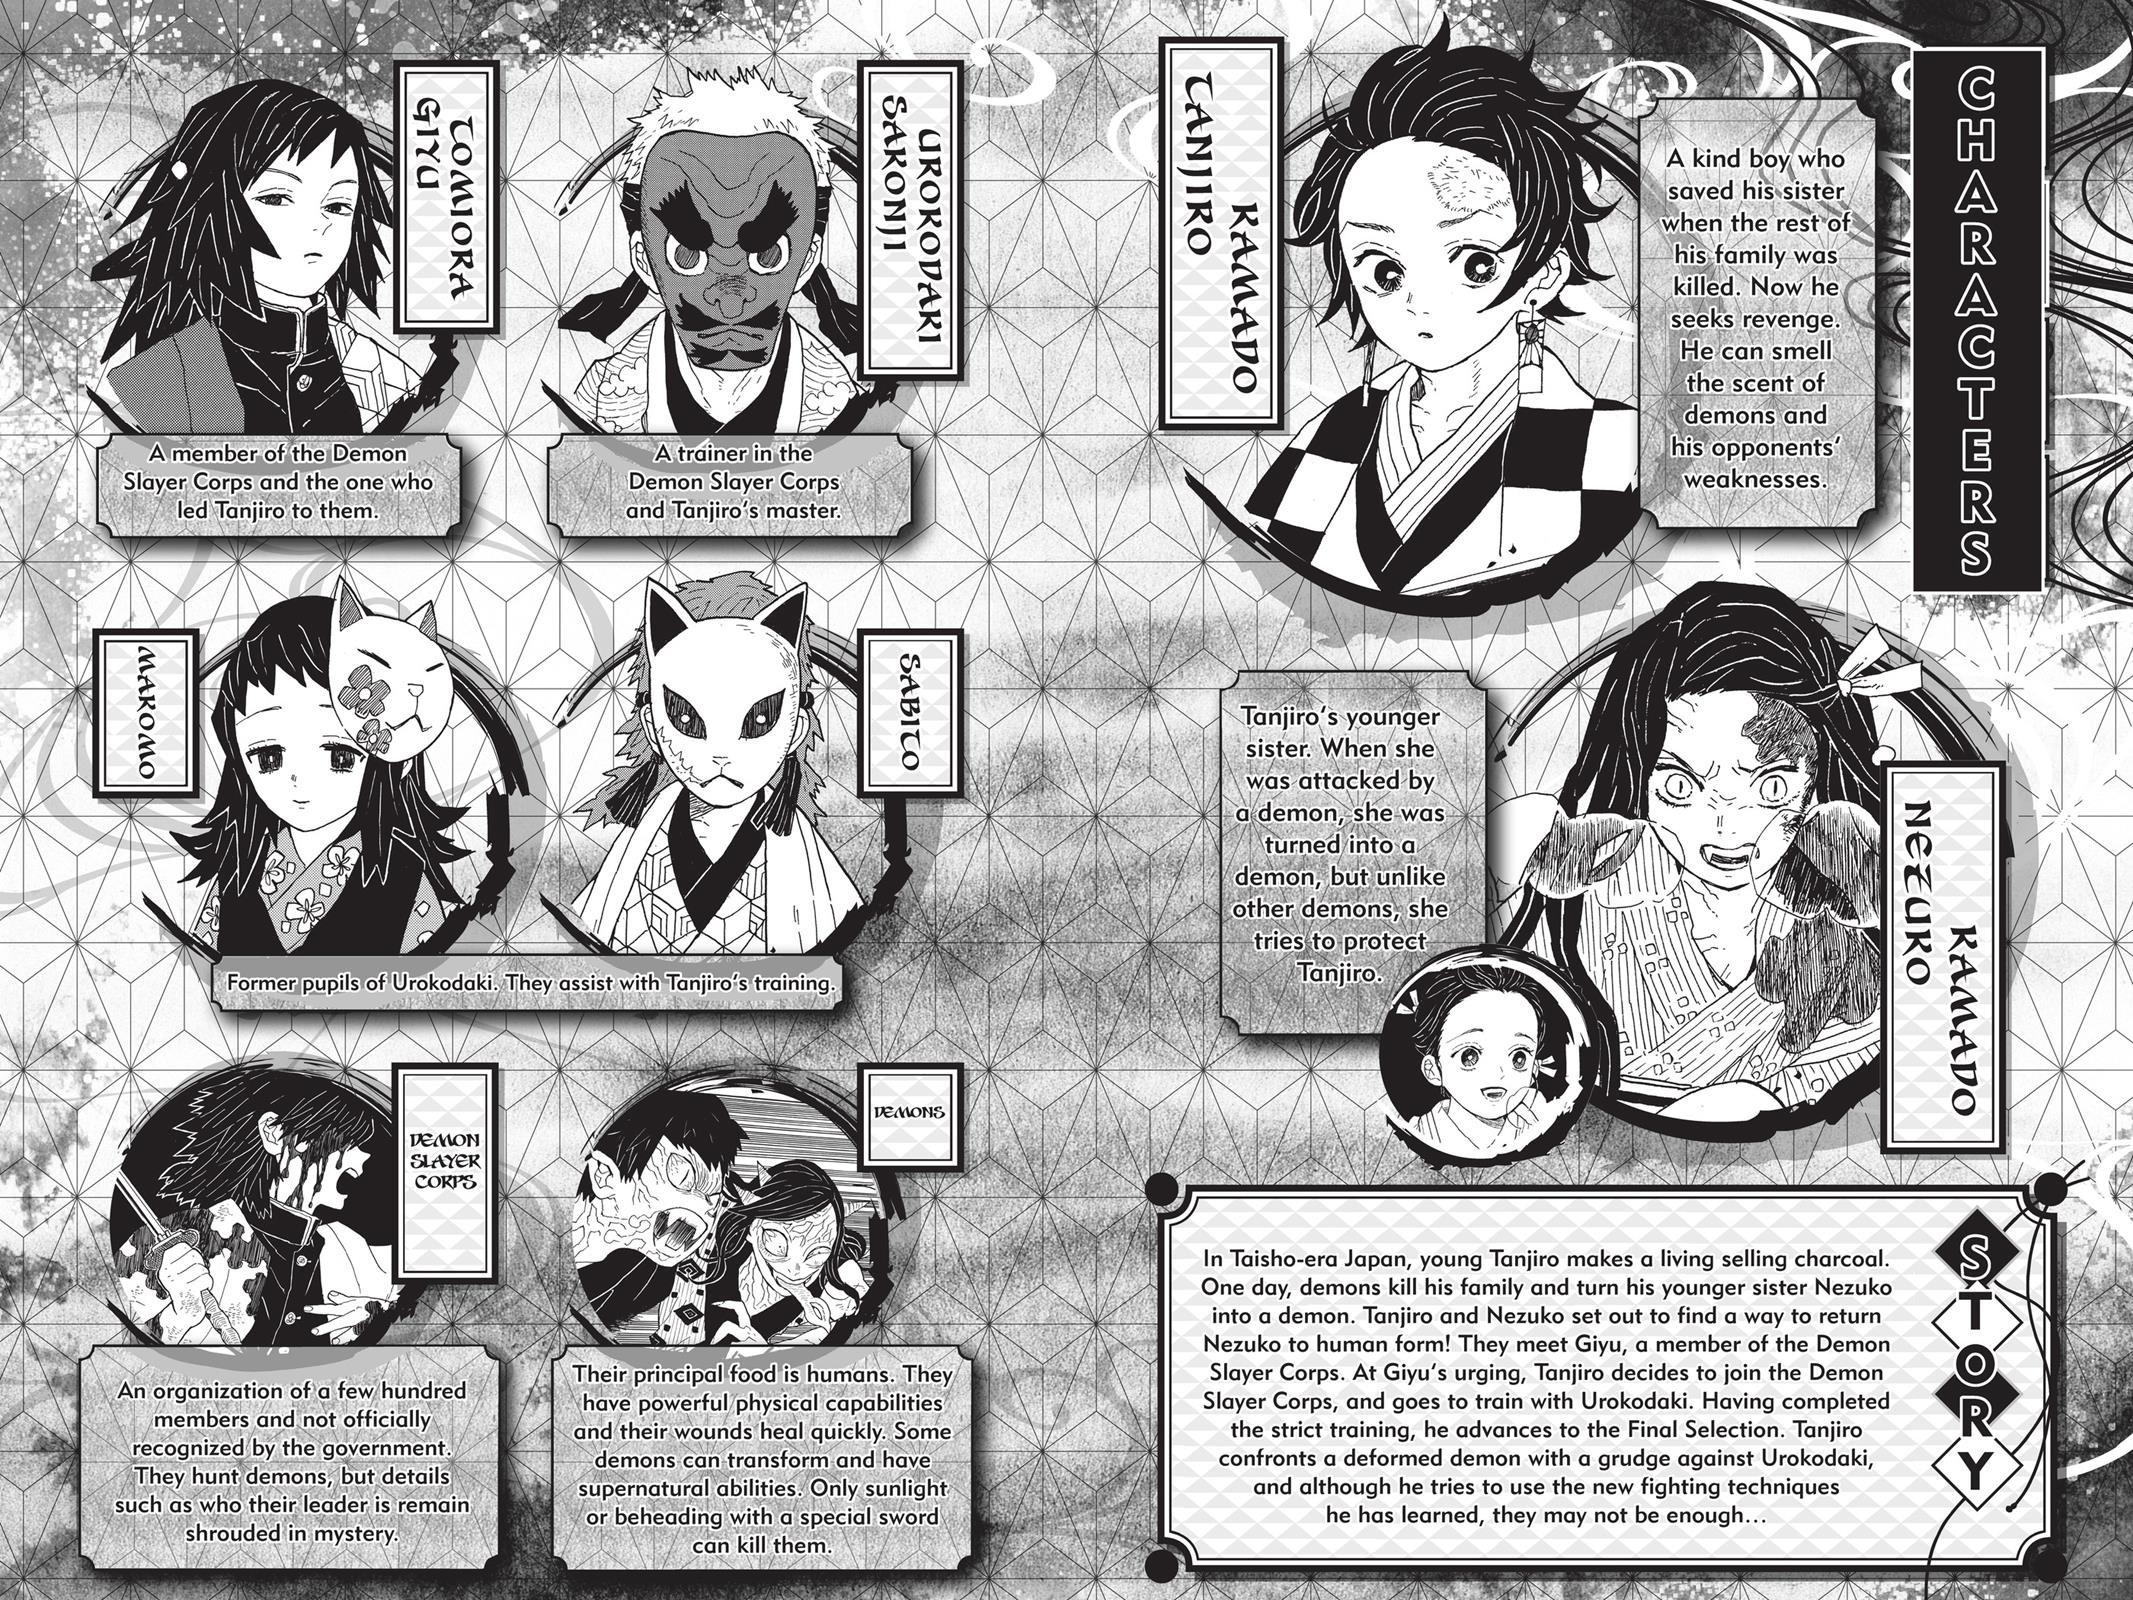 Demon Slayer Manga Manga Chapter - 8 - image 4